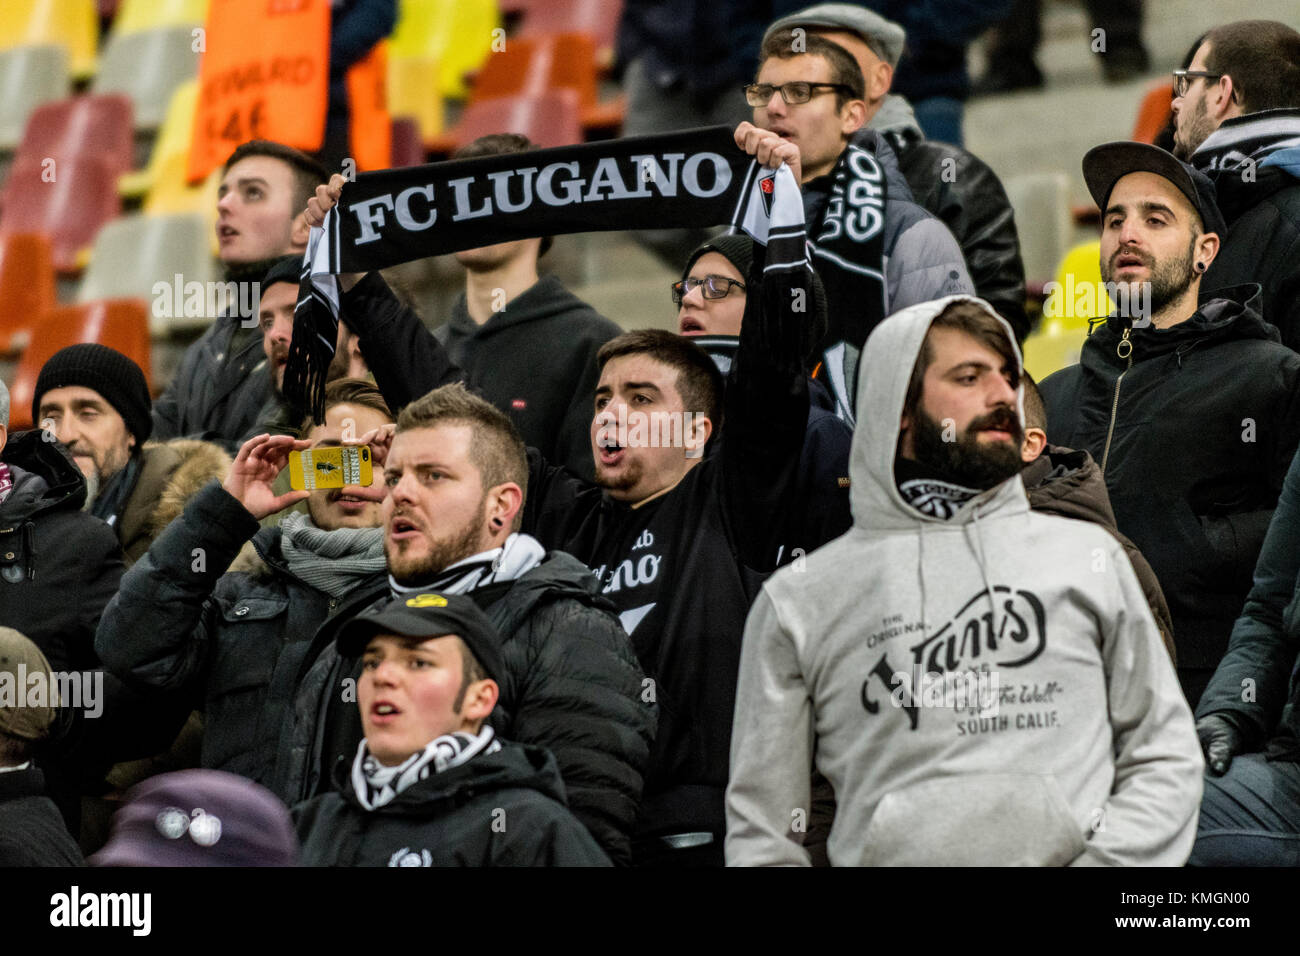 8 décembre 2017 : fc lugano fans au cours de l'UEFA Europa League 2017-2018, phase de groupe, groupe g match entre fcsb Bucarest (ROU) et fc lugano (CHE) au stade national, Bucarest, Roumanie rou. foto : Cronos/catalin soare Banque D'Images